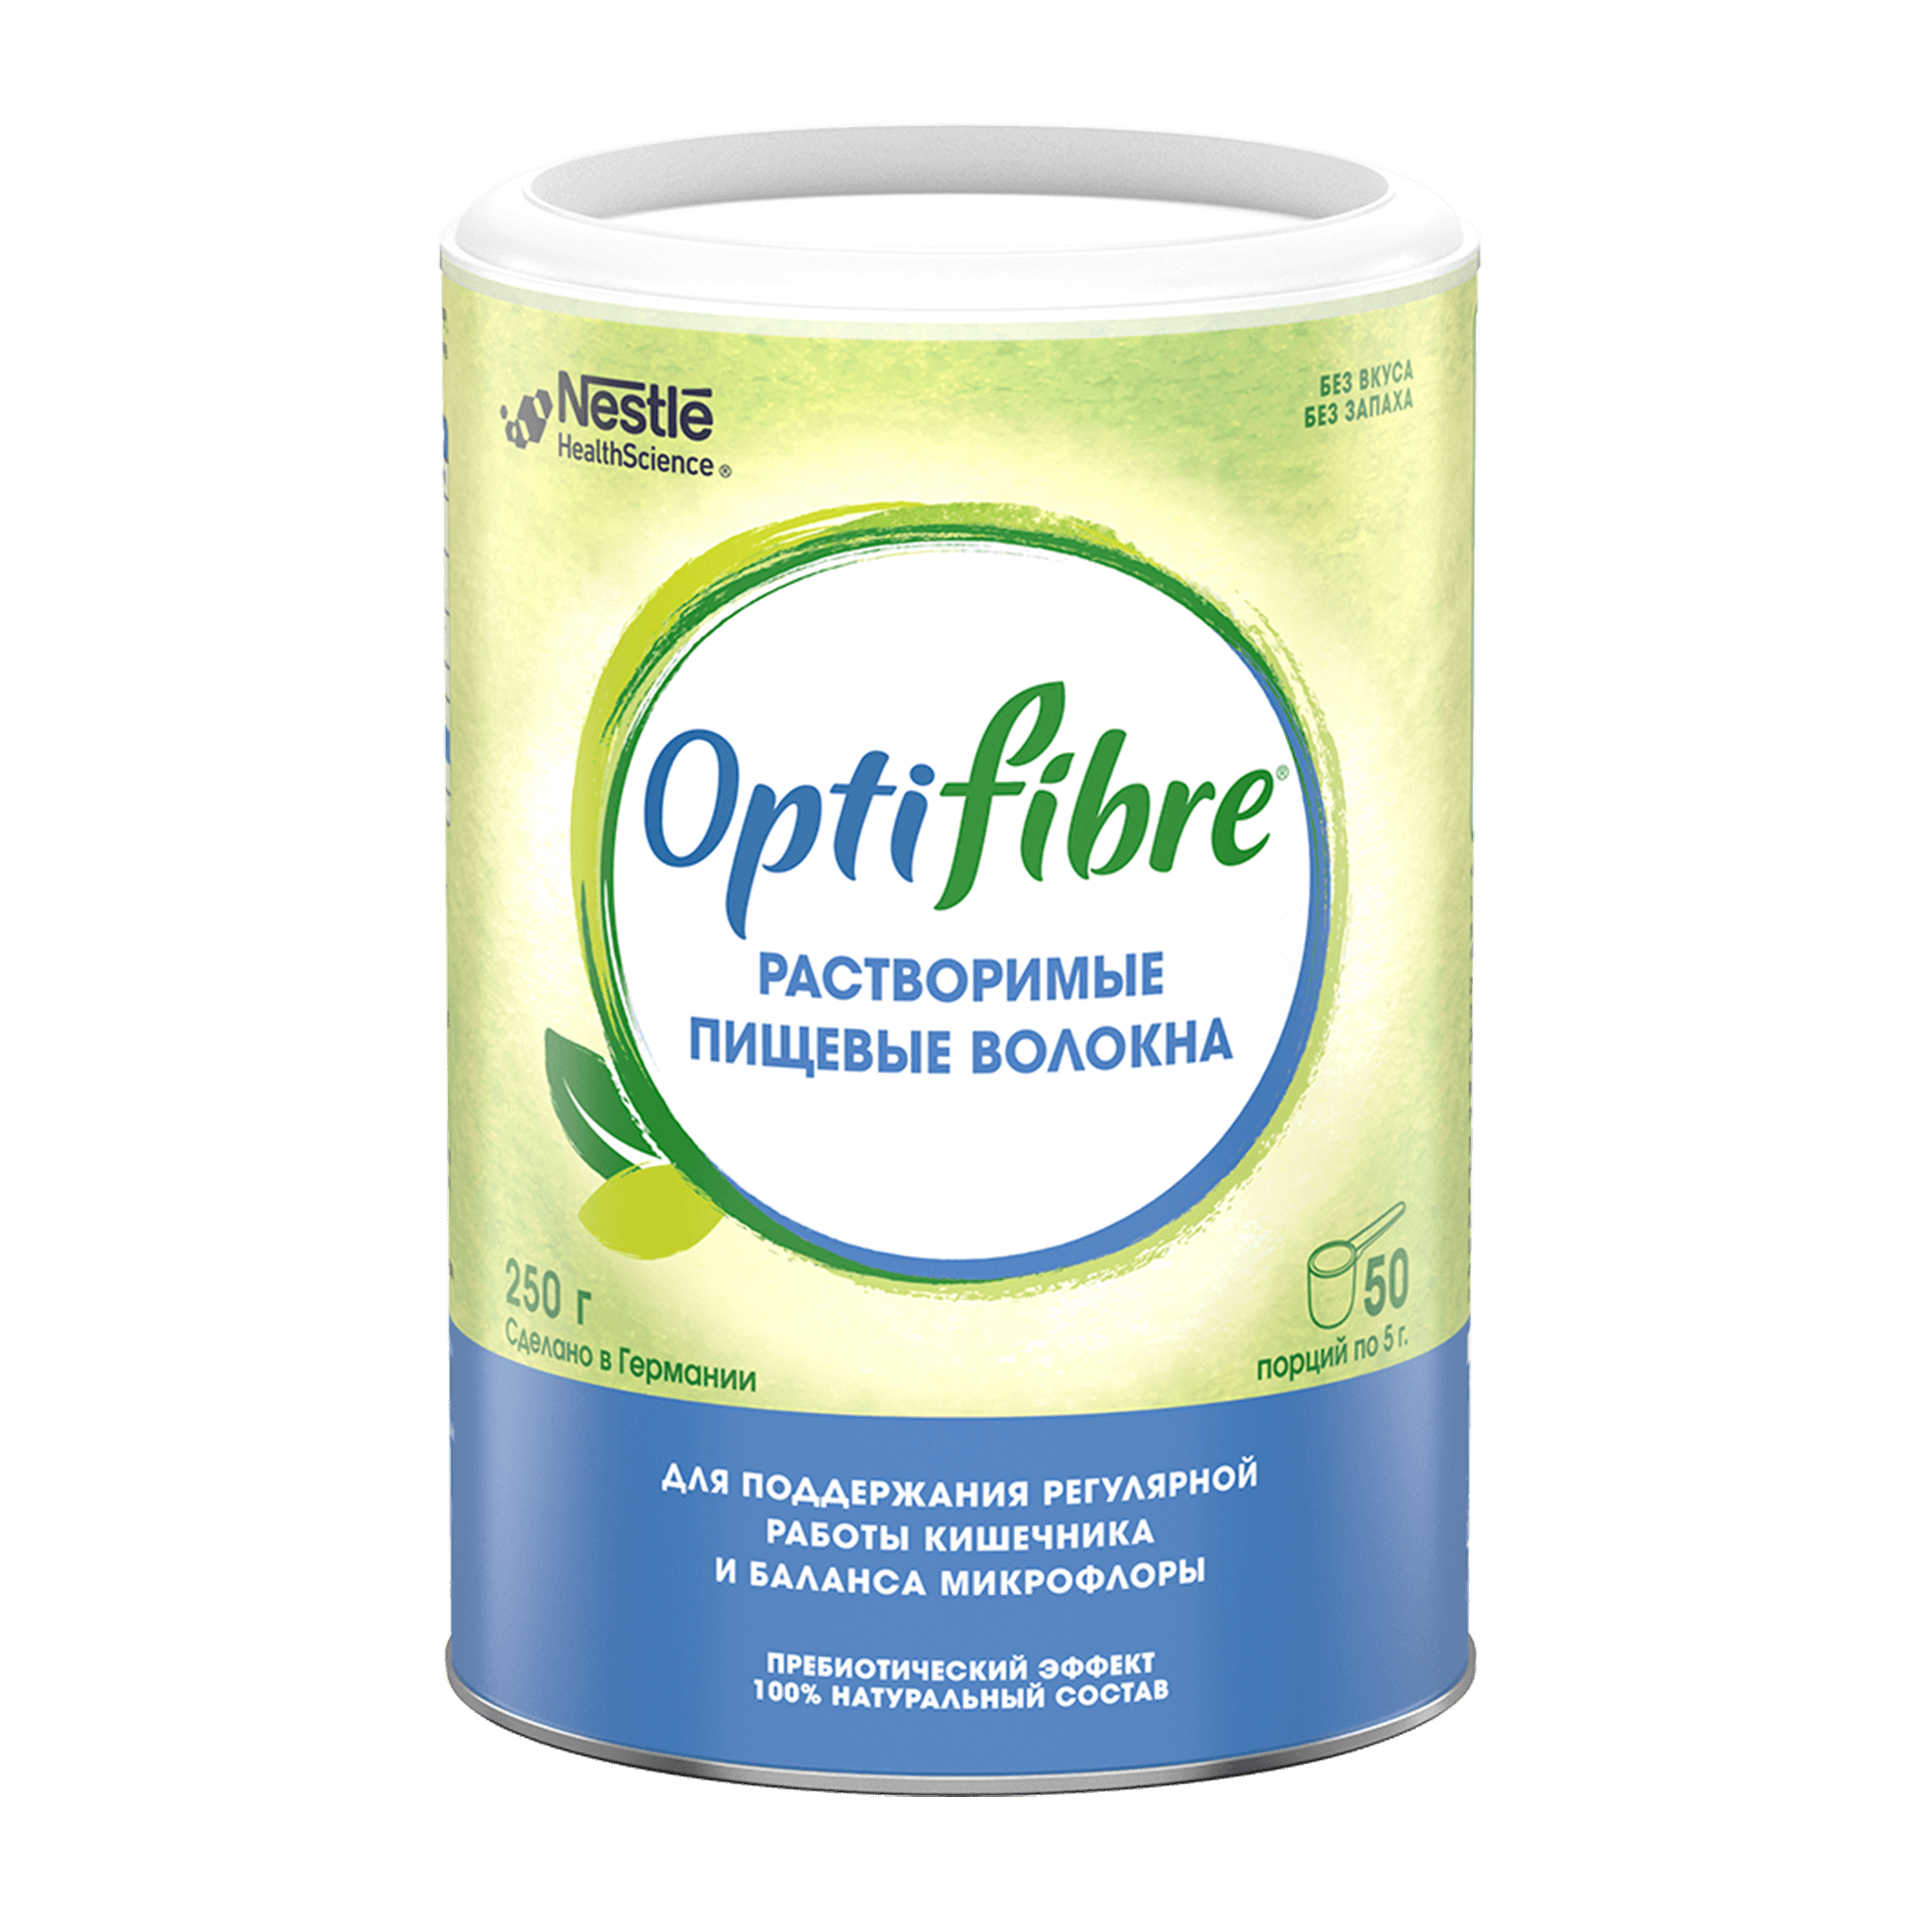 Пребиотические пищевые волокна OptiFibre® - натуральный продукт для поддержания комфортной и регулярной работы кишечника&nbsp;